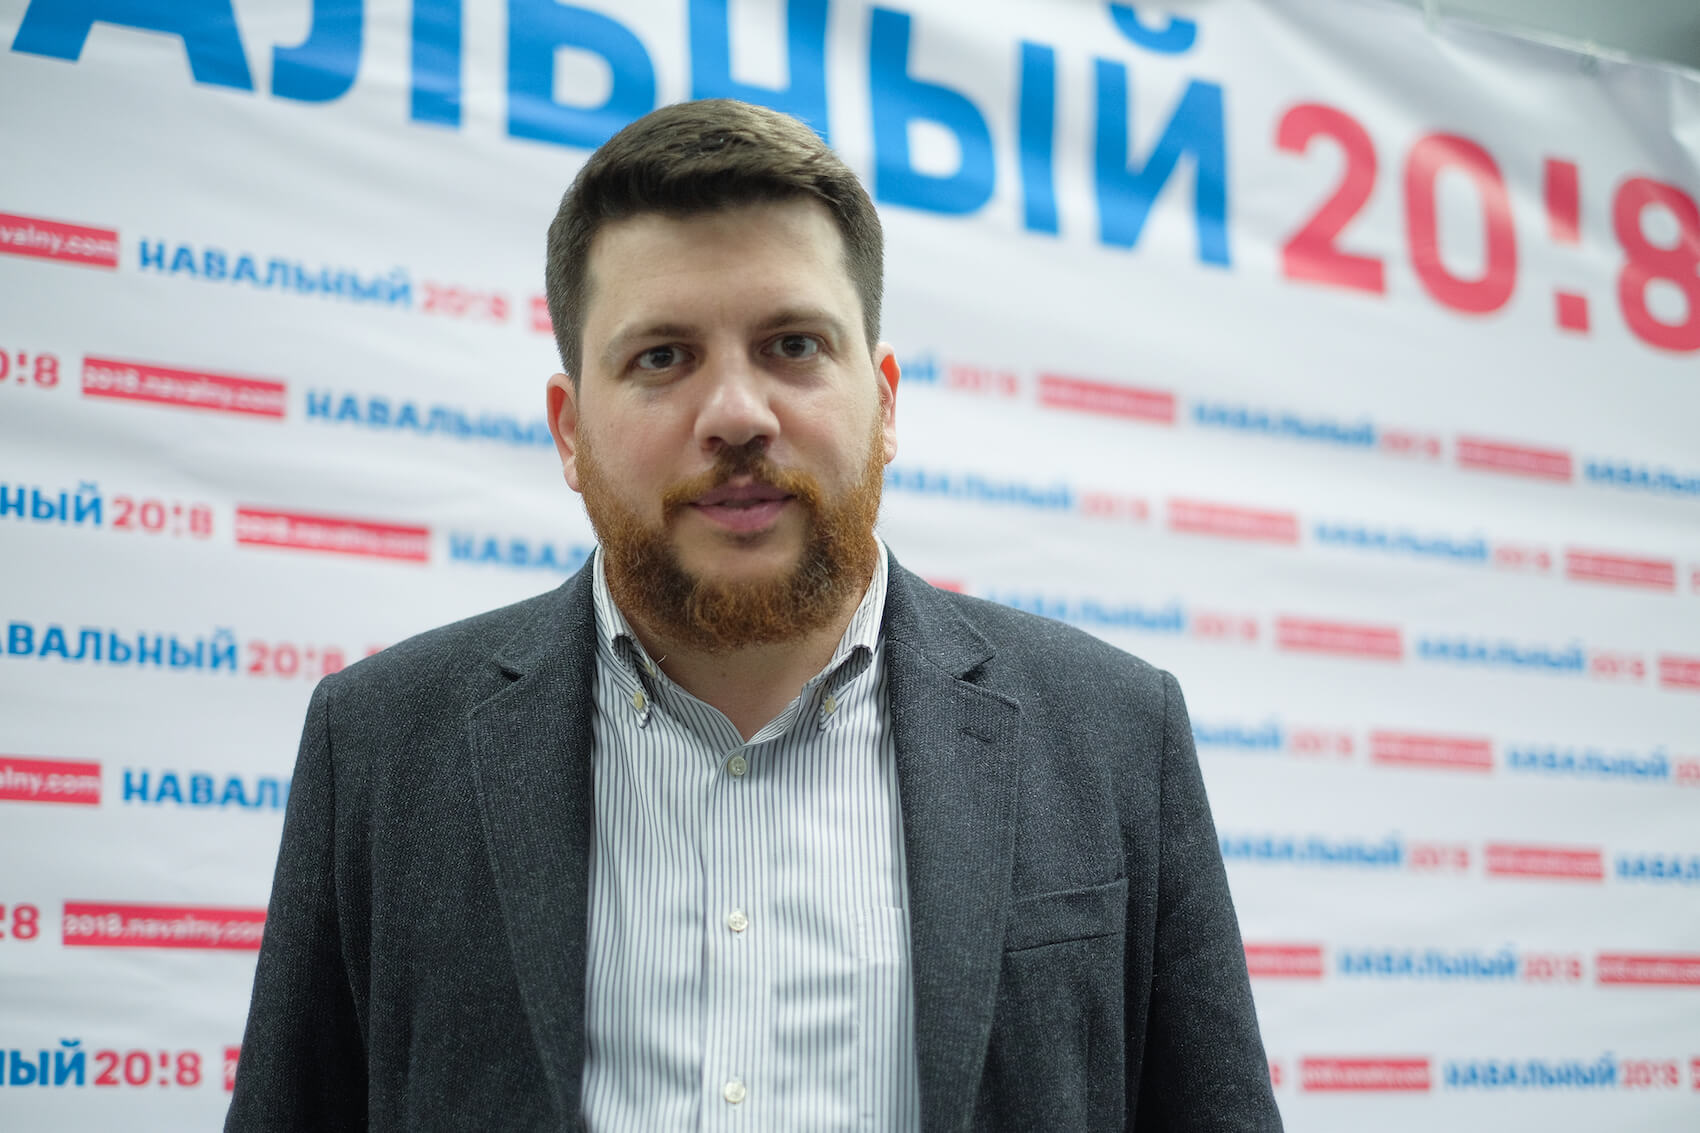 Леонид Волков сообщил, что отдел расследований команды Навального продолжит работу, и анонсировал несколько новых больших проектов